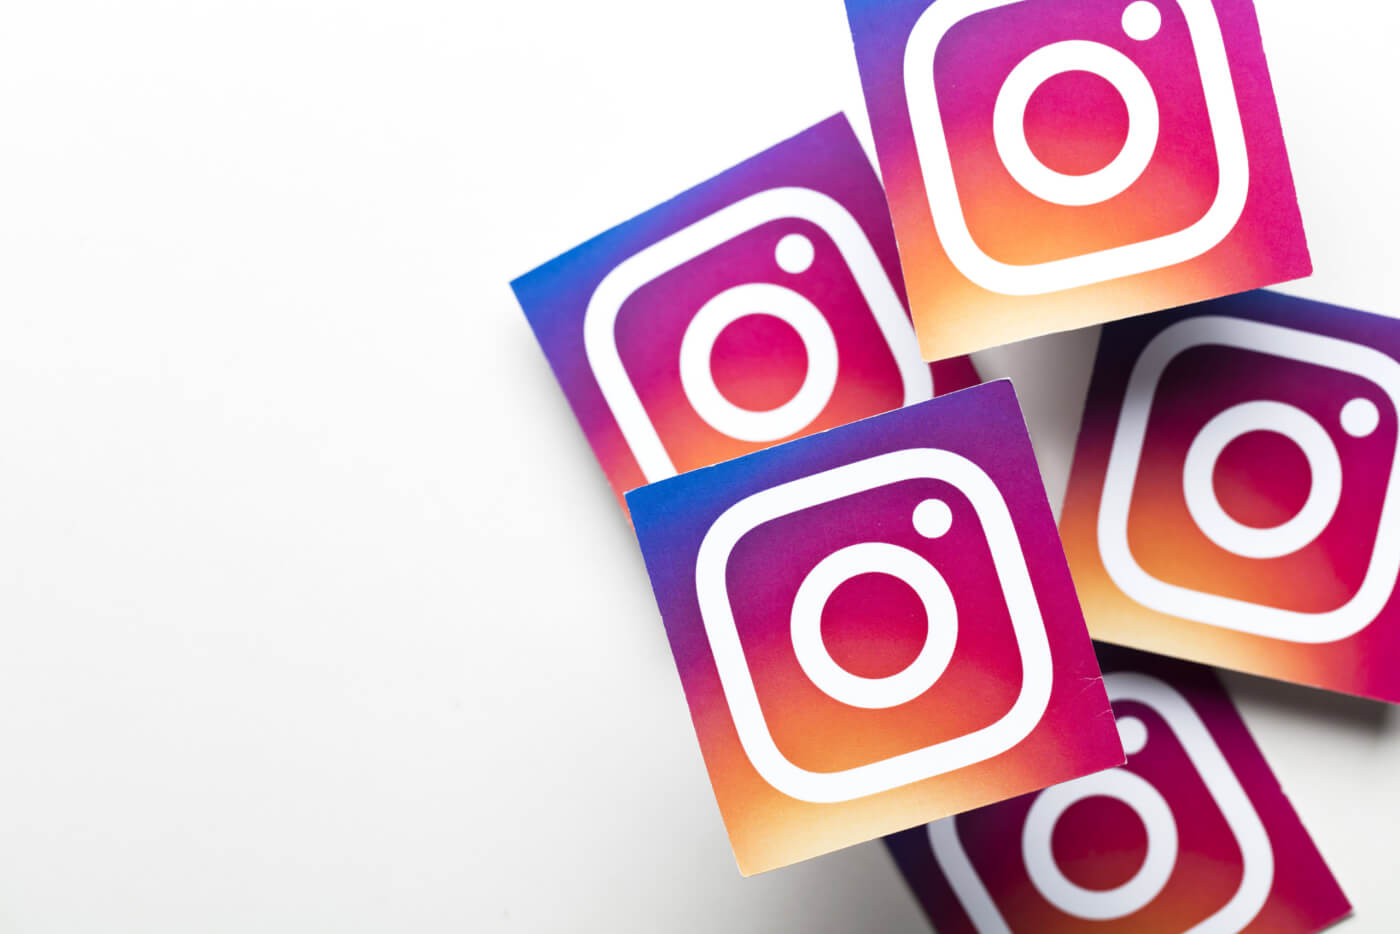 Instagram Story Ads: 4 Dinge, auf die du achten musst [+Video]